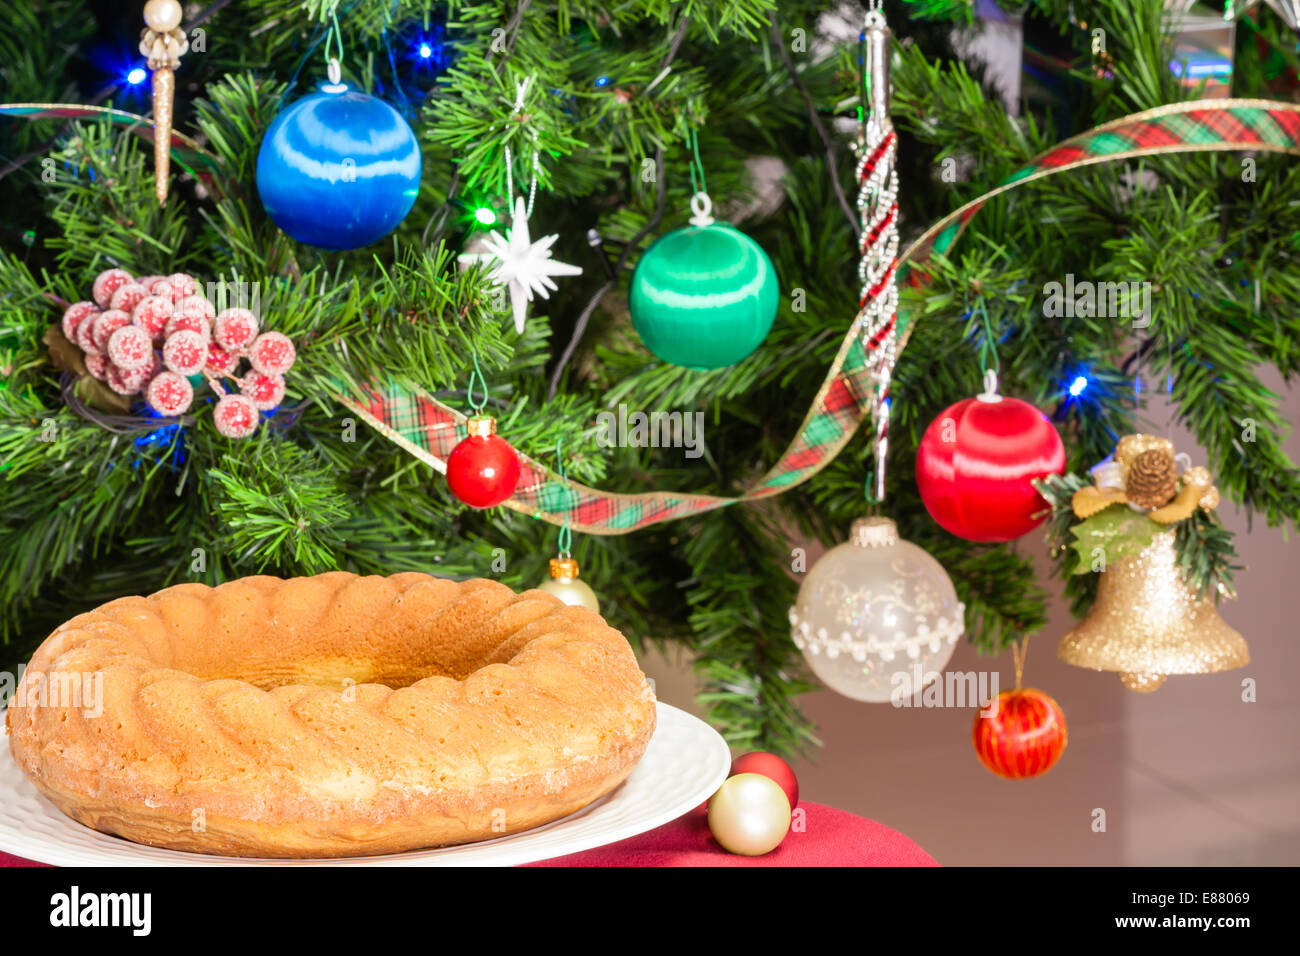 Eine Nahaufnahme der köstlichen goldenes braun verkrustet Pfund Gugelhupf gebacken in der Weihnachtszeit. Stockfoto